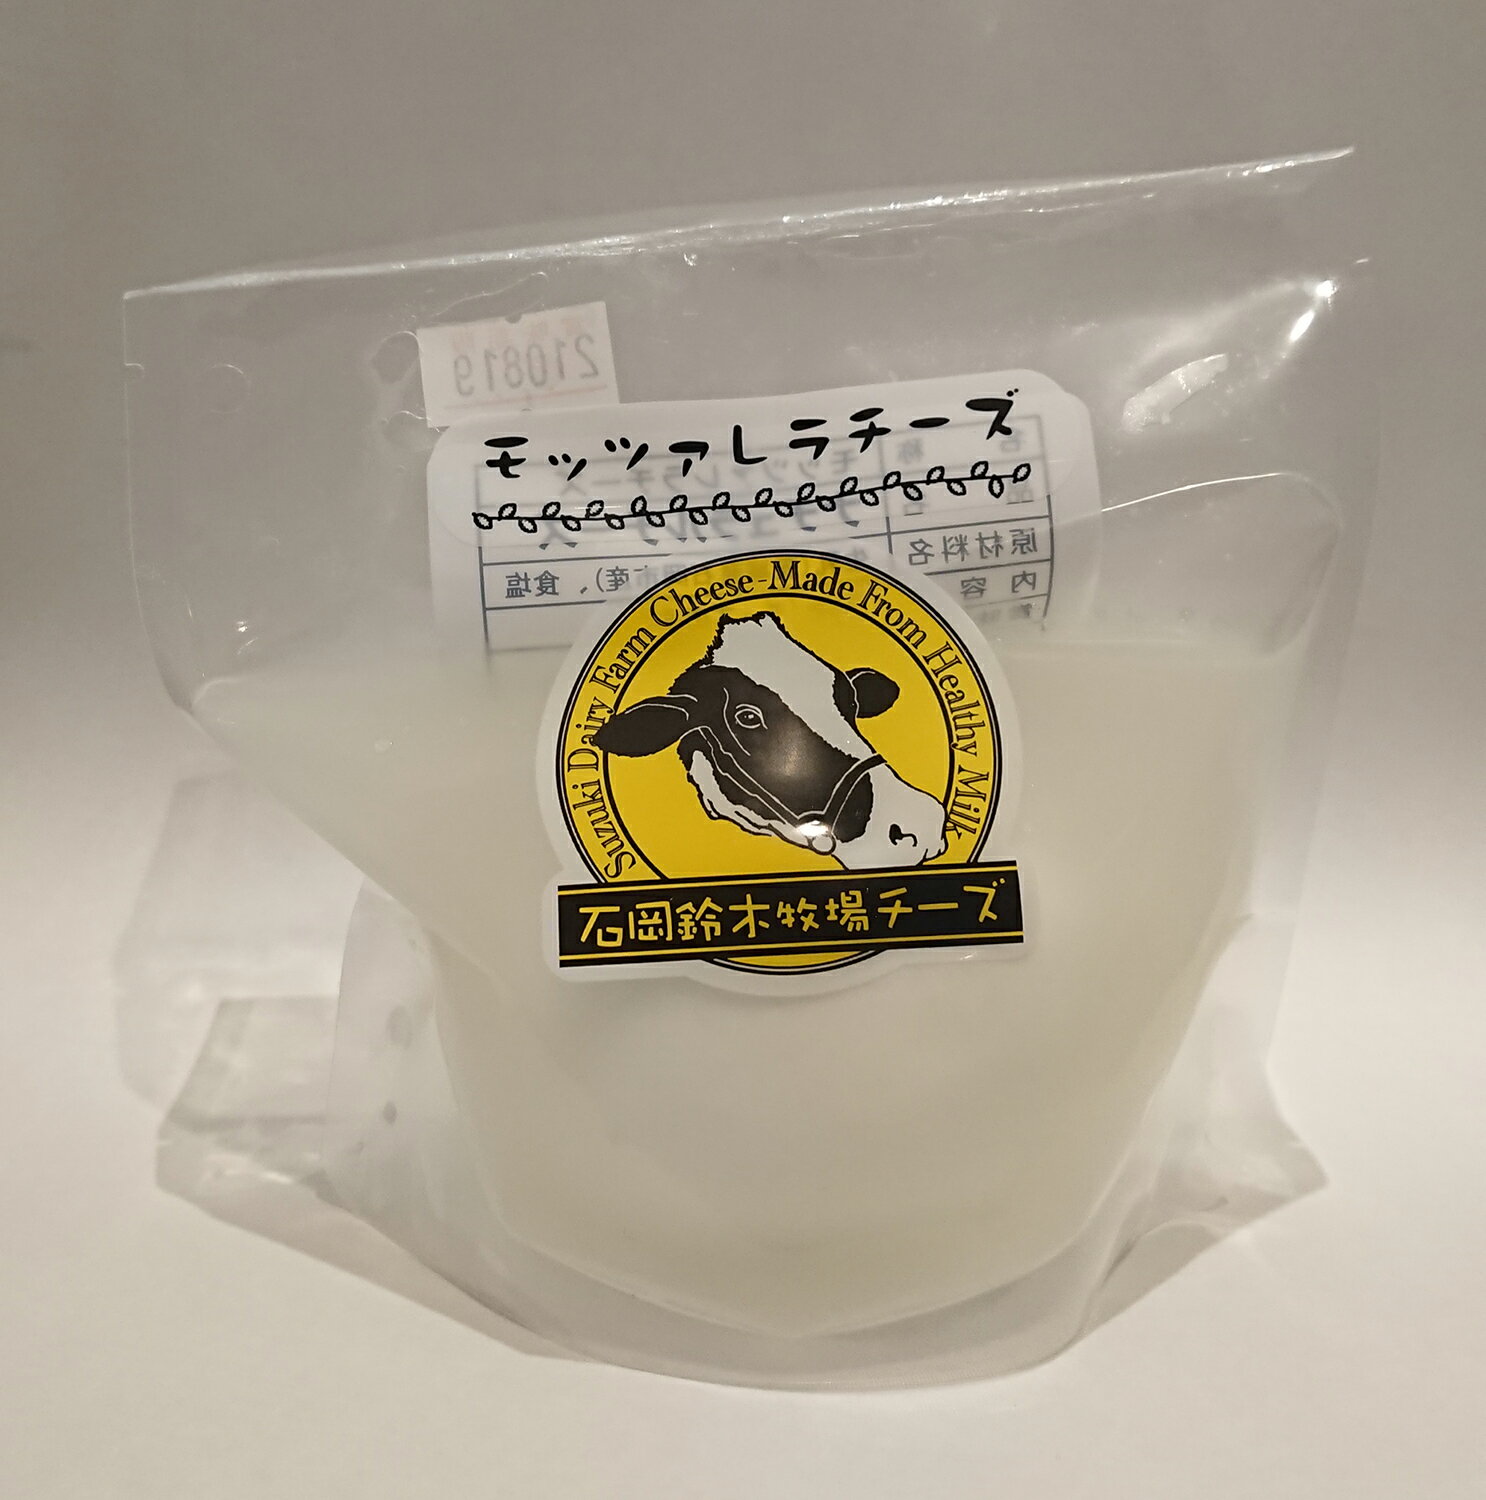 商品情報 スペック フレッシュチーズ 製造元 石岡鈴木牧場（茨城県石岡市） 原材料 生乳・食塩 保存方法 冷蔵庫 商品説明 自社牧場の生乳から作るフレッシュタイプのチーズです。 柔らかくもっちりとしたミルク感たっぷりのモッツァレラチーズです。 〈栄養成分表示（100gあたり）〉 エネルギー235kcal タンパク質　16.2g 脂質　18.6g 炭水化物　0.8g 食塩相当量　0.36g ※出来たてのフレッシュなチーズお送りするので、日時指定が無い場合は毎週金曜日に発送いたします。